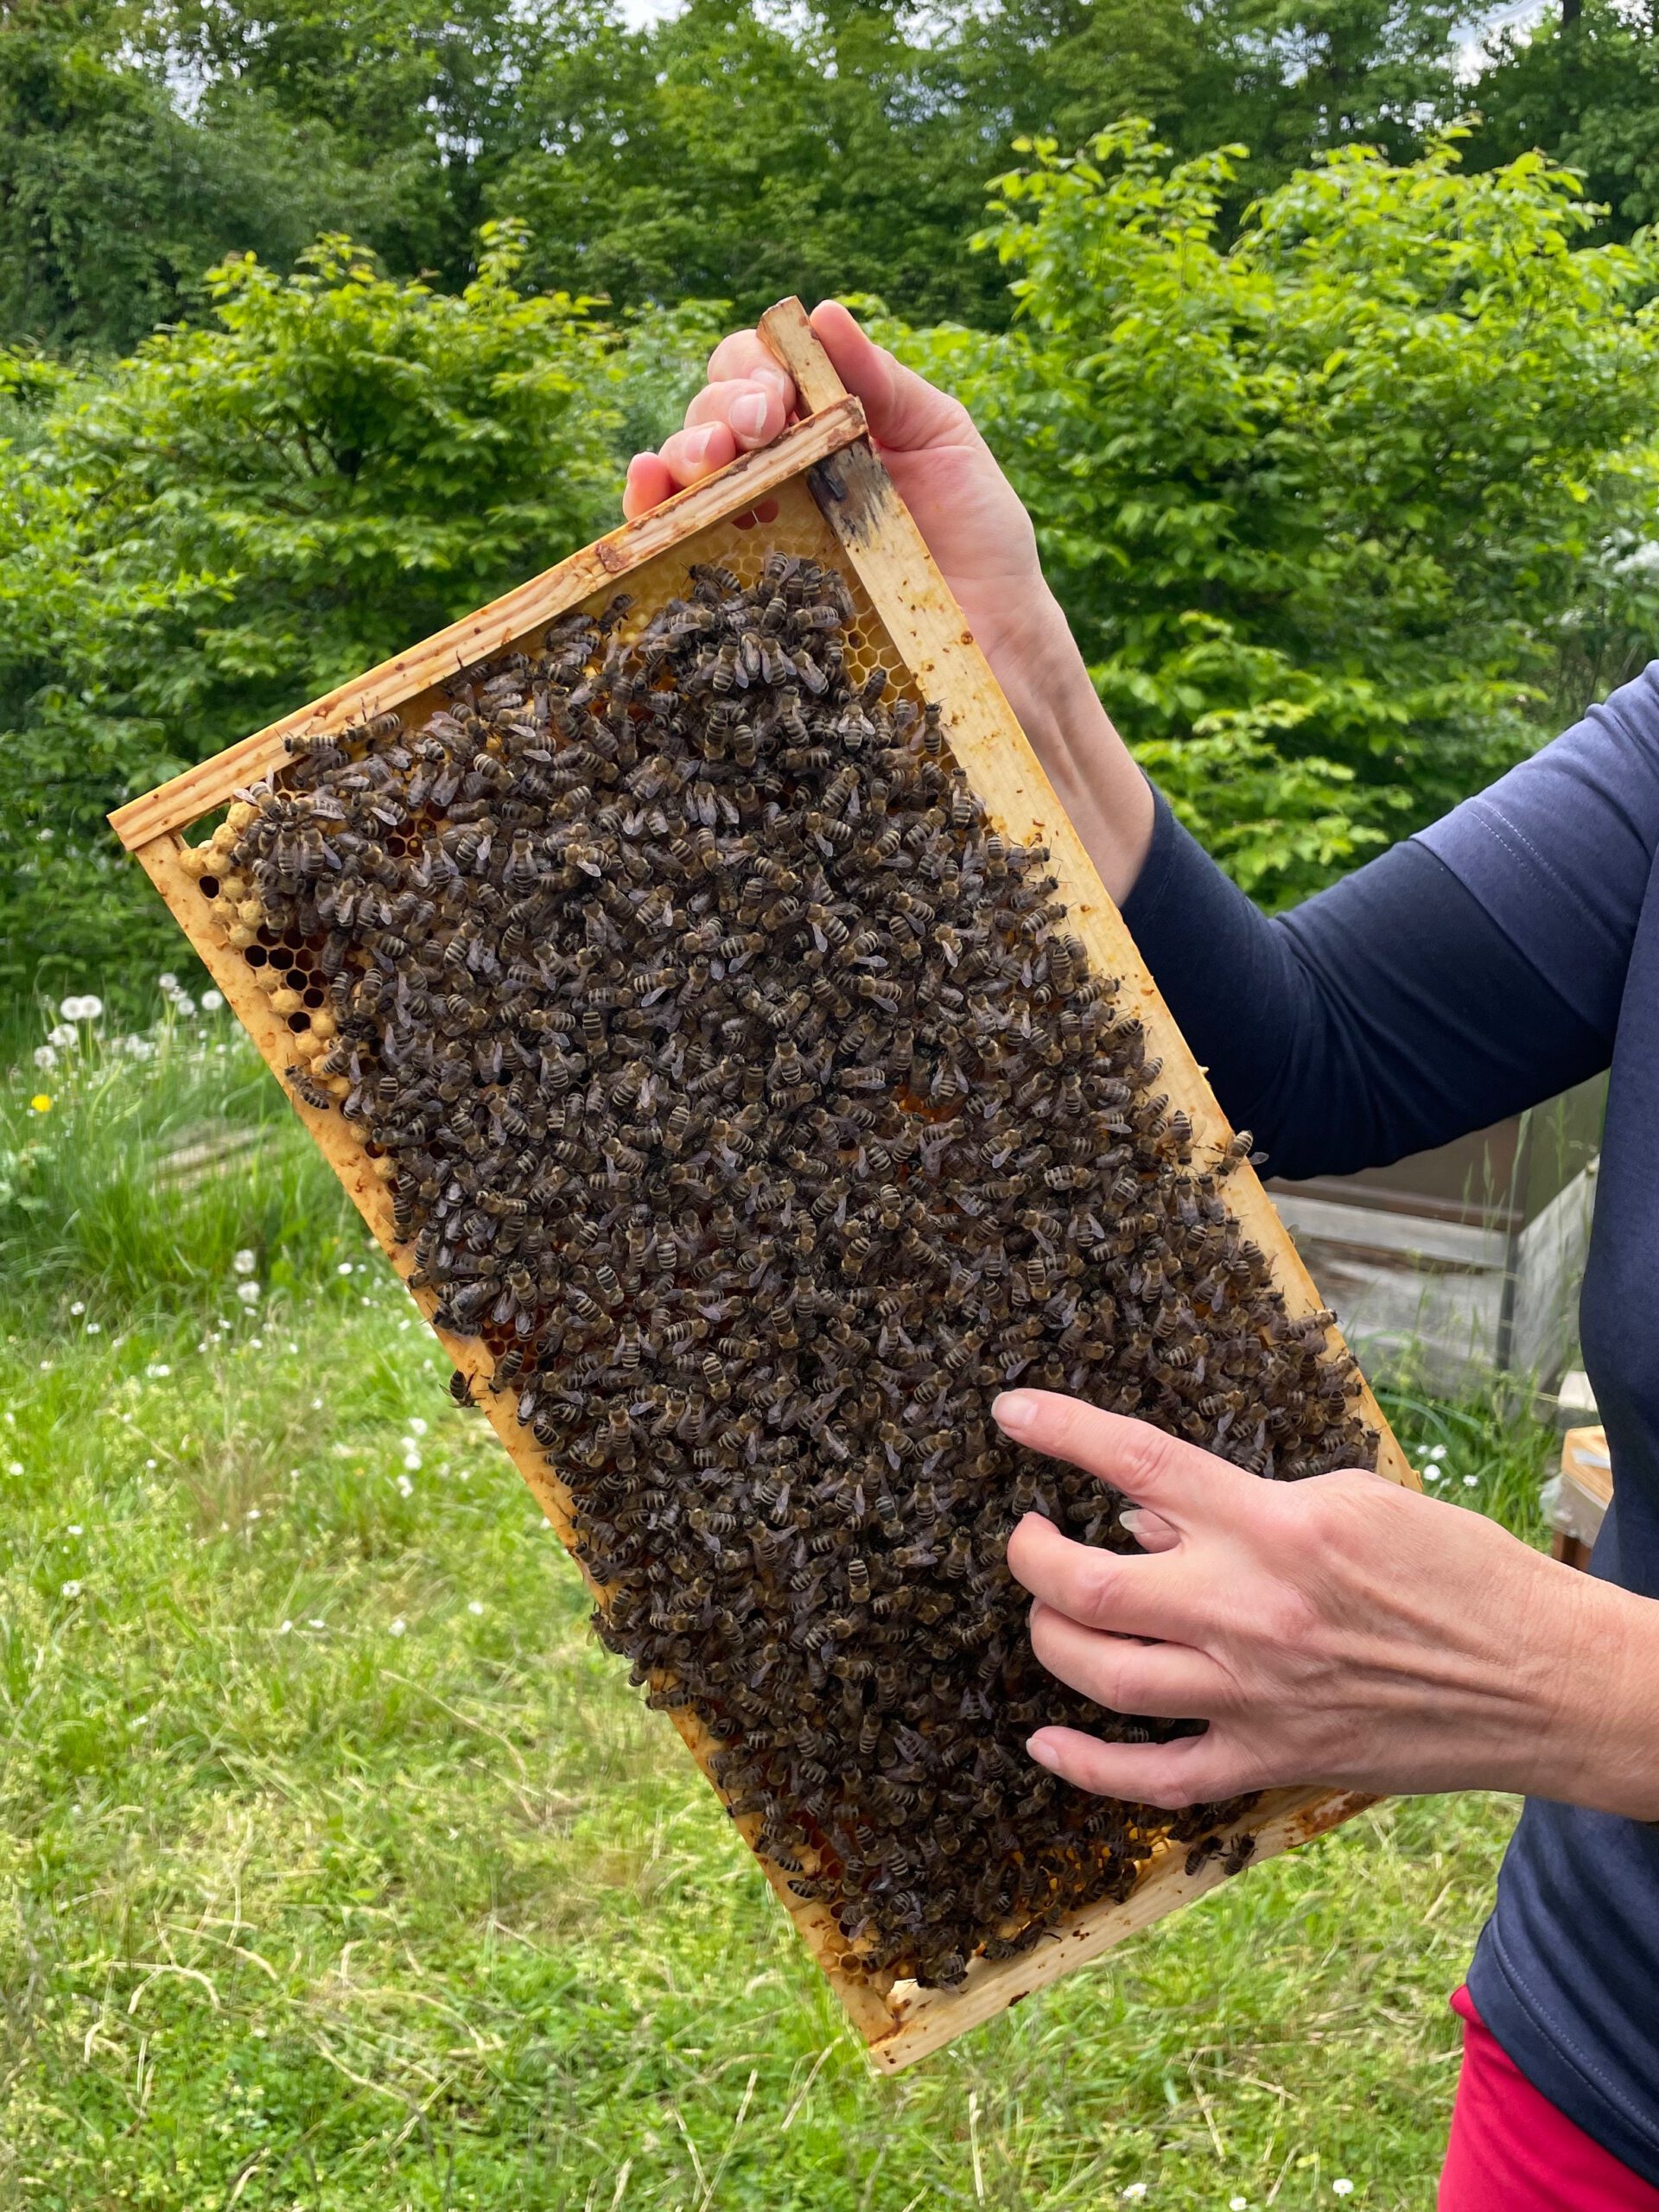 Am Lehrbienenstand; Bienenführung für Bienenpartin Diana Martin mit Siemens Healthineers IST-Team Erlangen